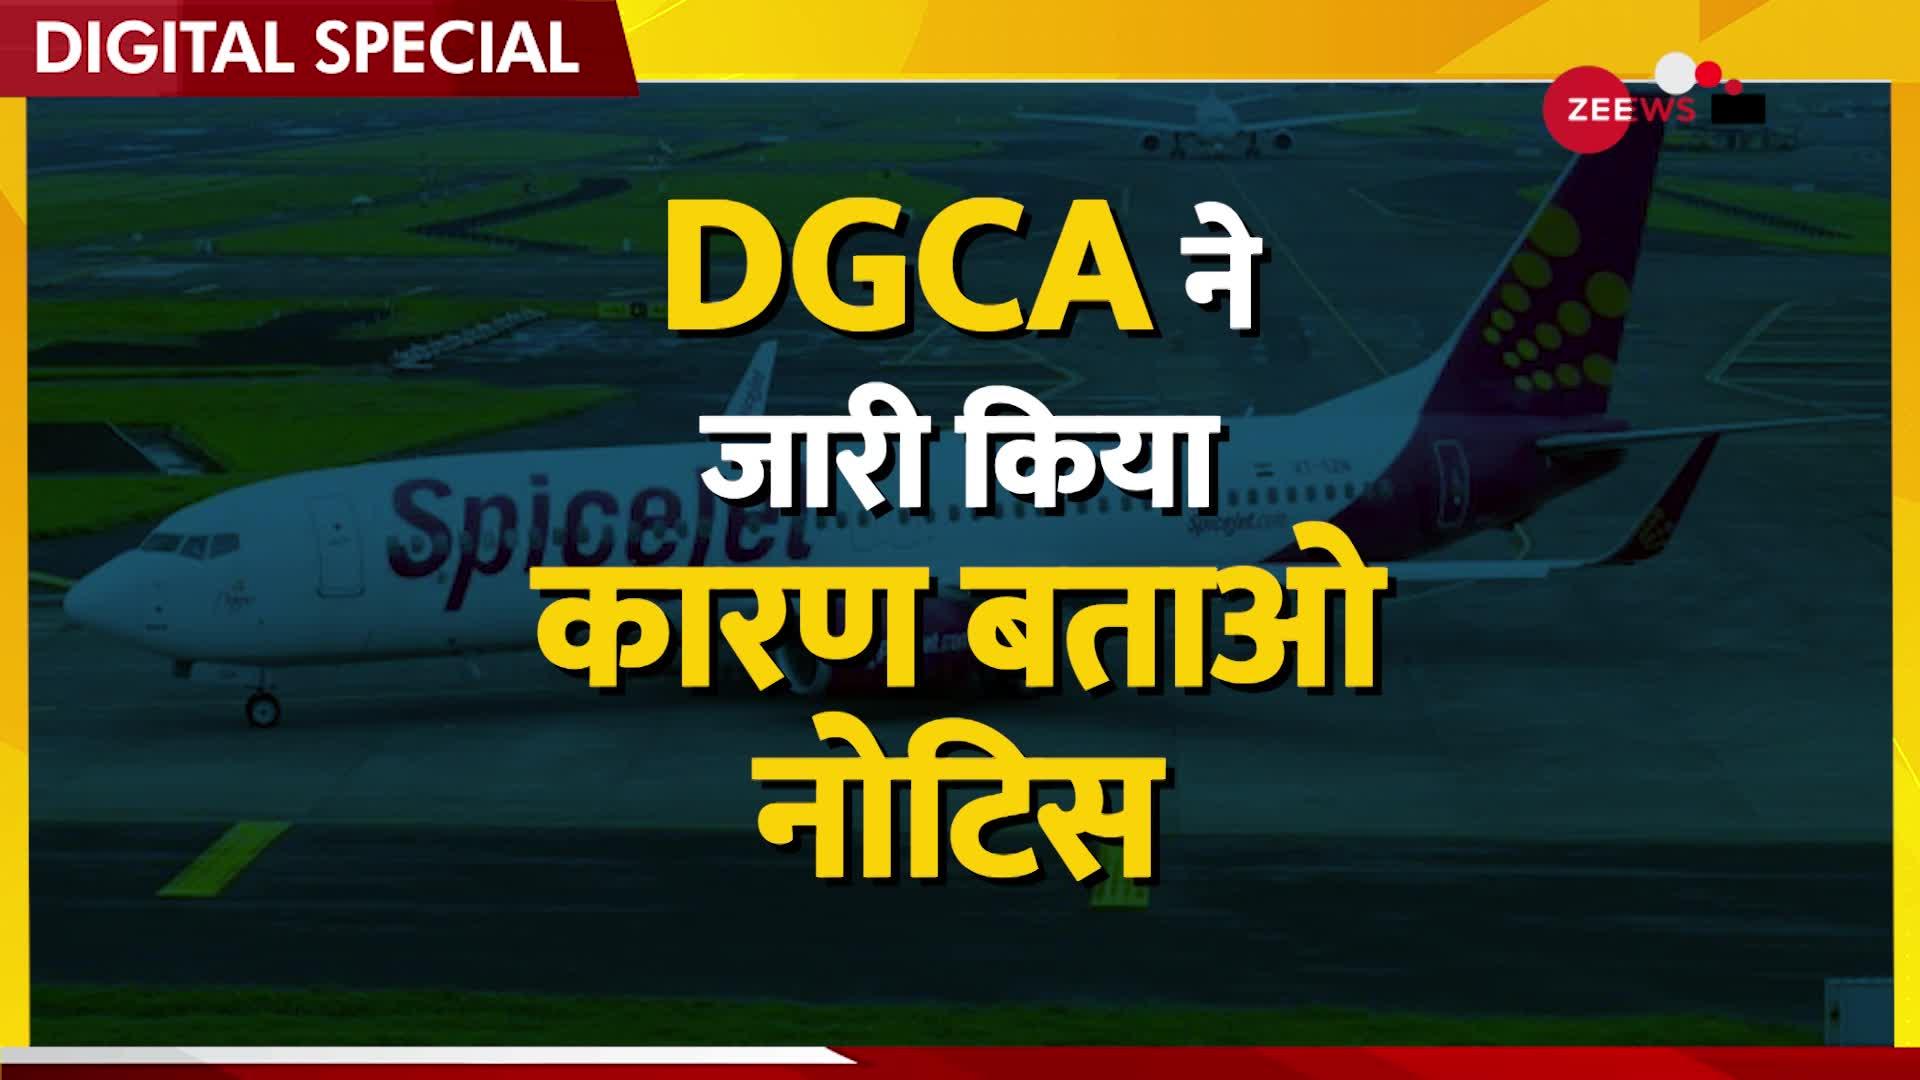 Spice jet में आईं 18 दिन में 8 खराबी ,  DGCA ने मांगा नोटिस